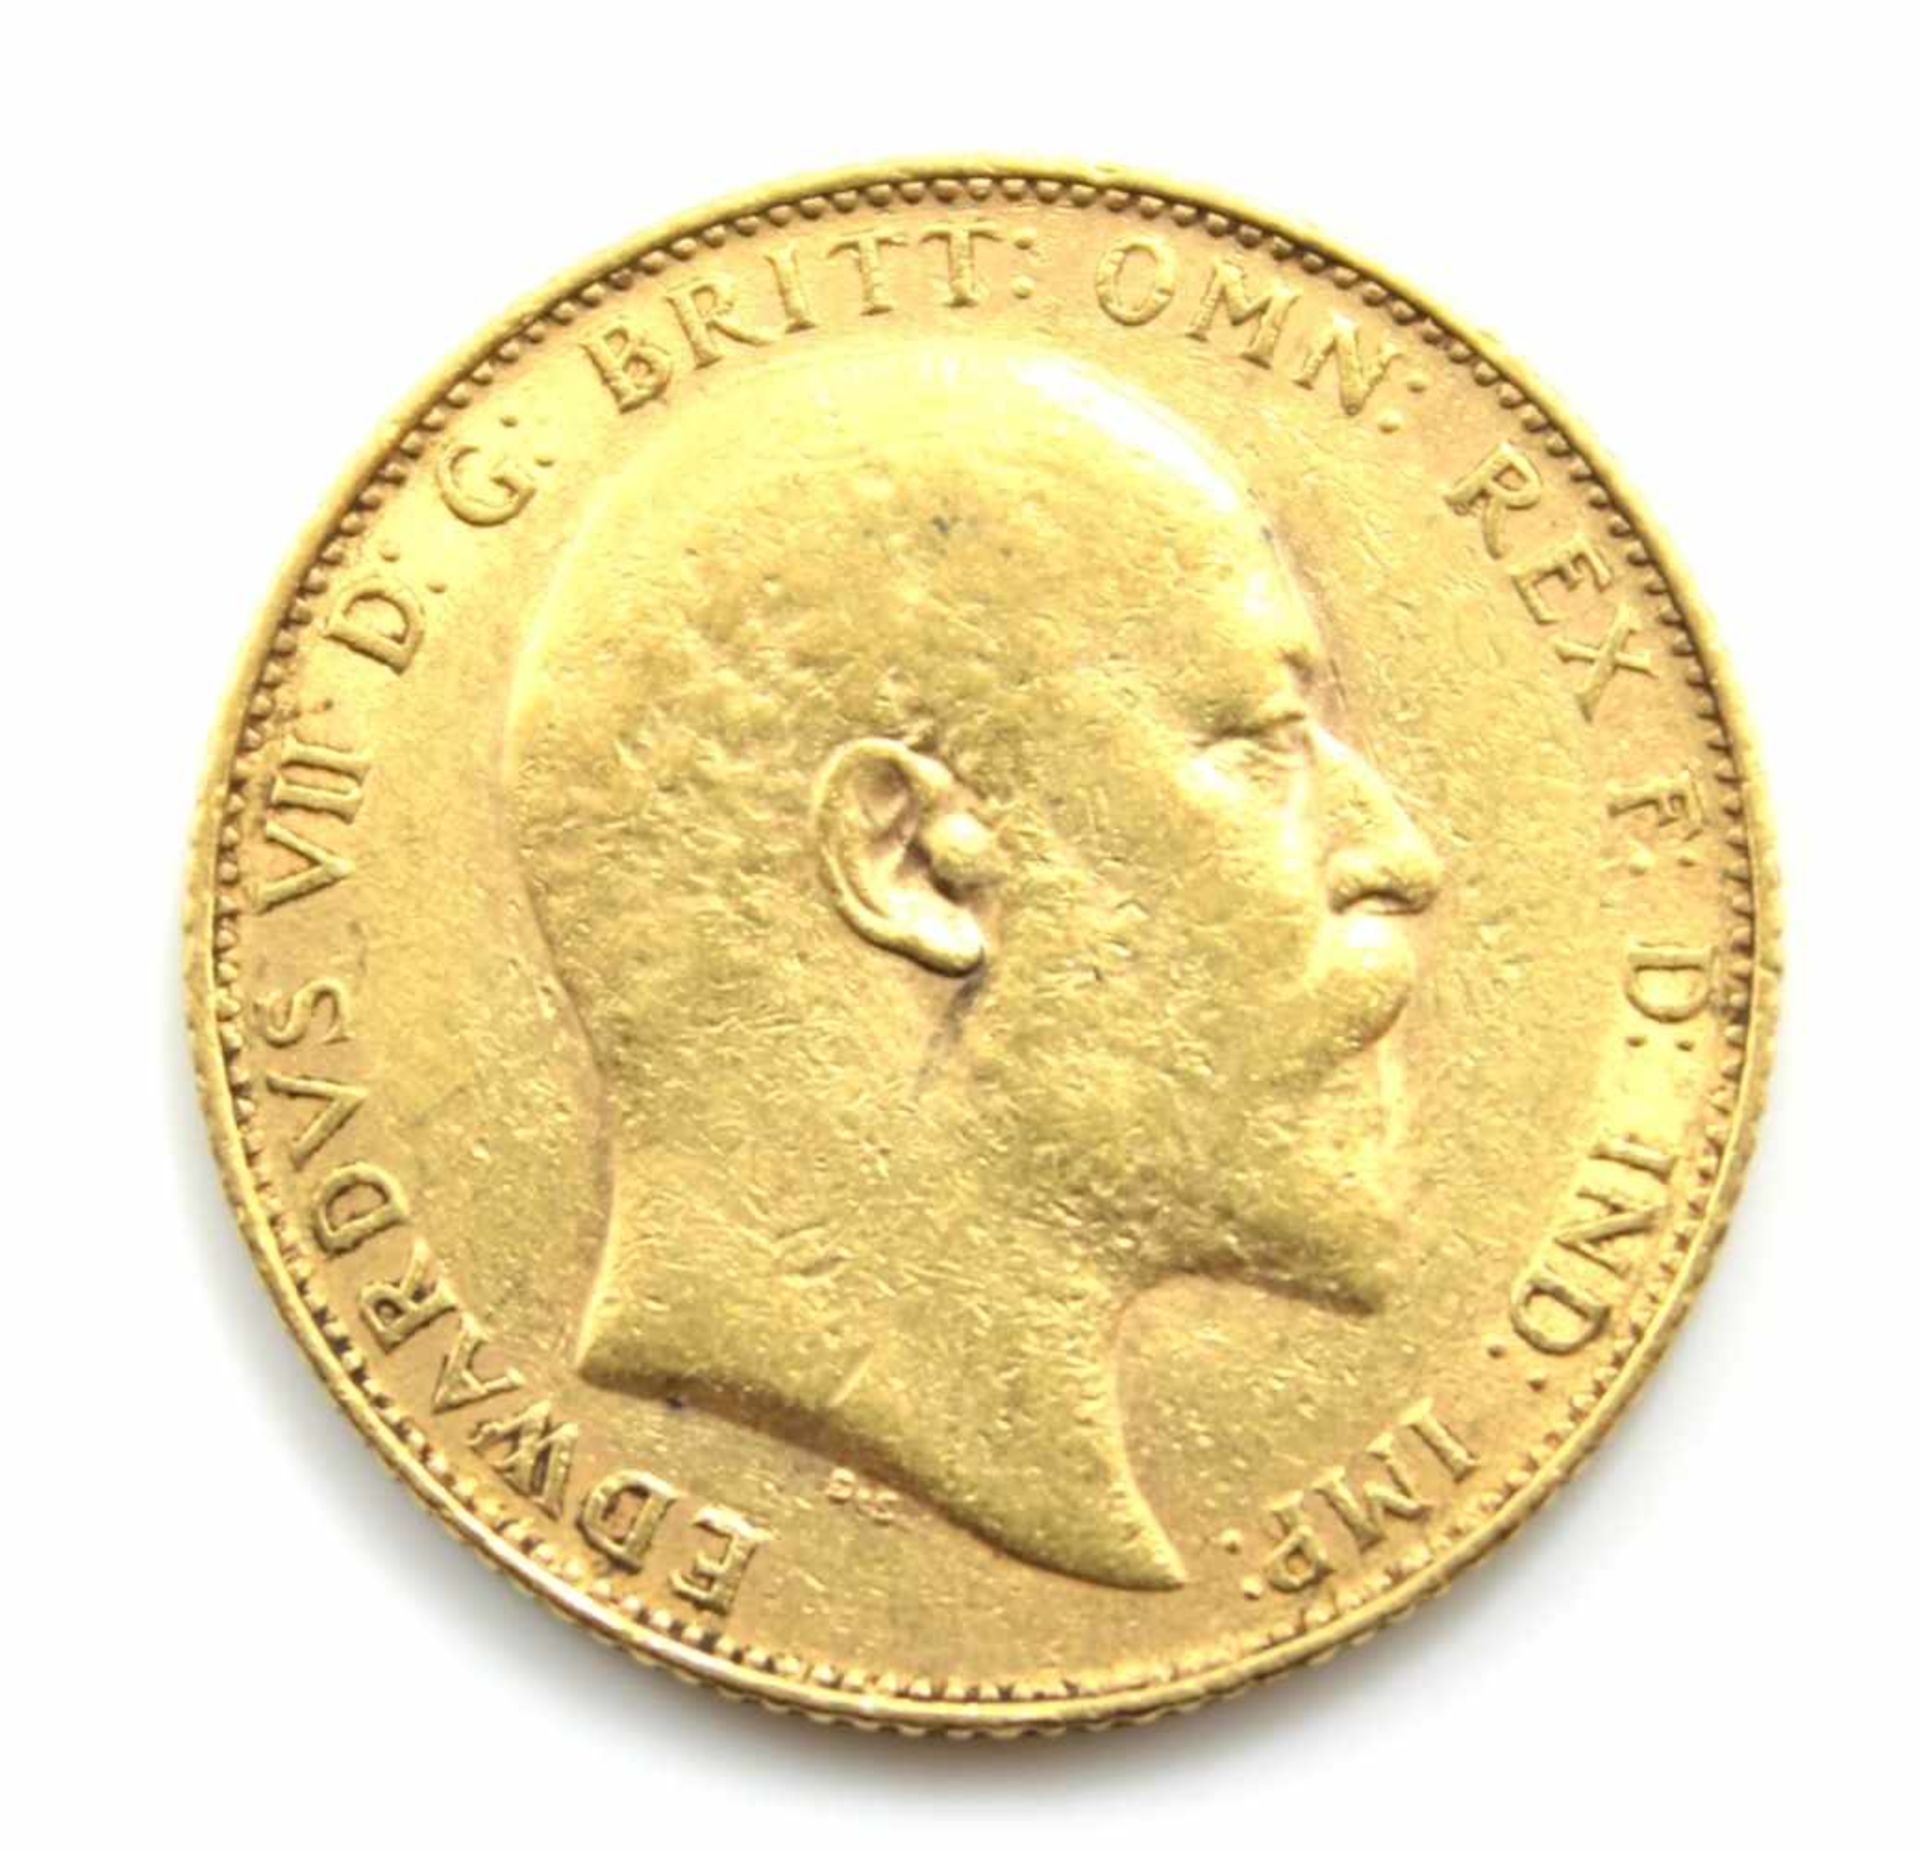 Goldmünze - Großbritannien 1907 1 Sovereign, Edwardus VII D.G., d.= 22 mm